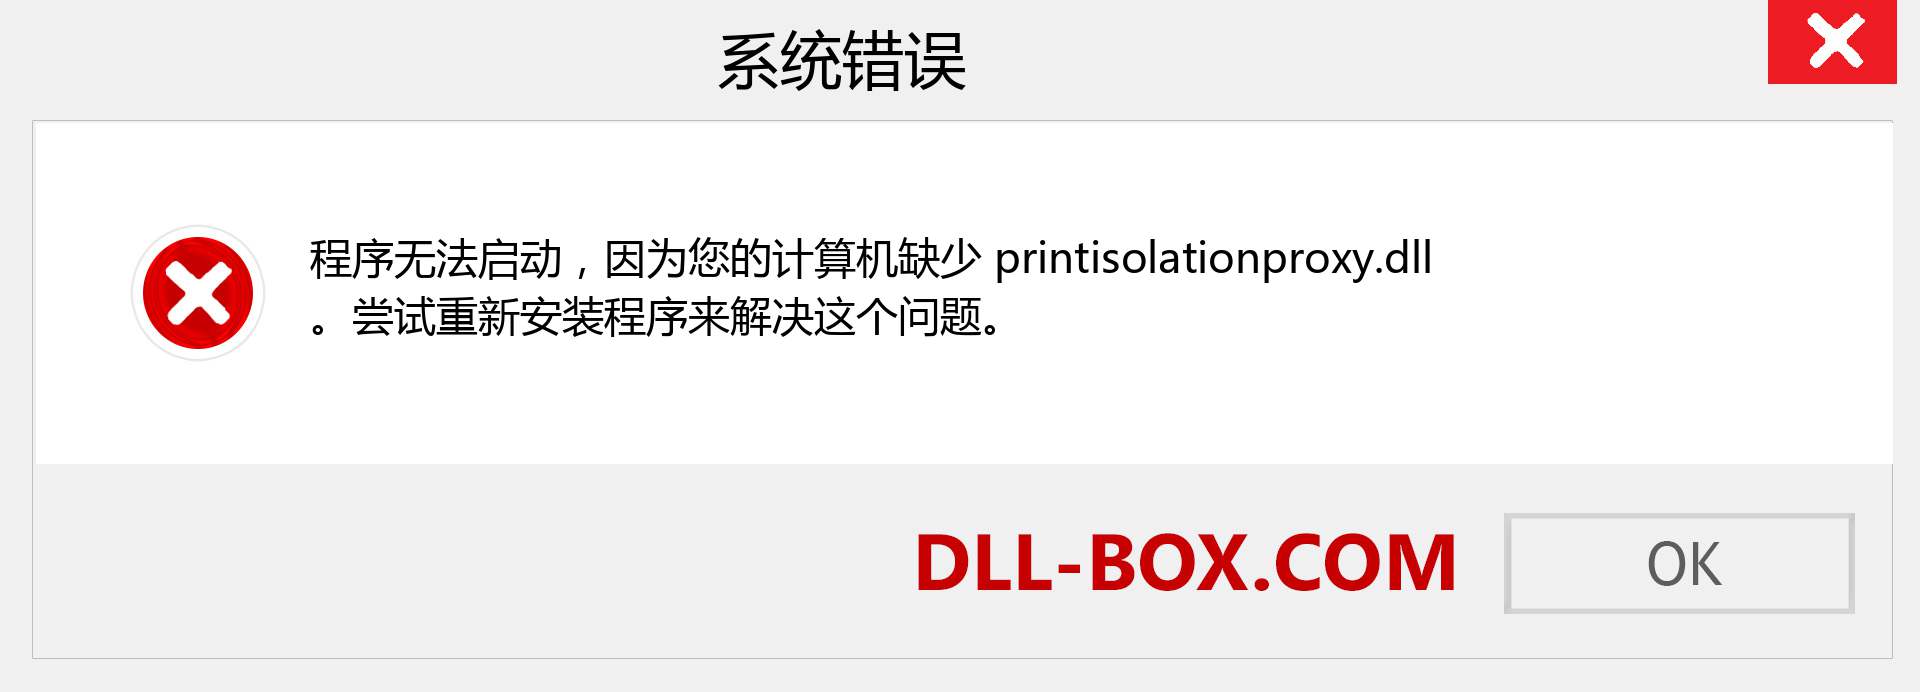 printisolationproxy.dll 文件丢失？。 适用于 Windows 7、8、10 的下载 - 修复 Windows、照片、图像上的 printisolationproxy dll 丢失错误